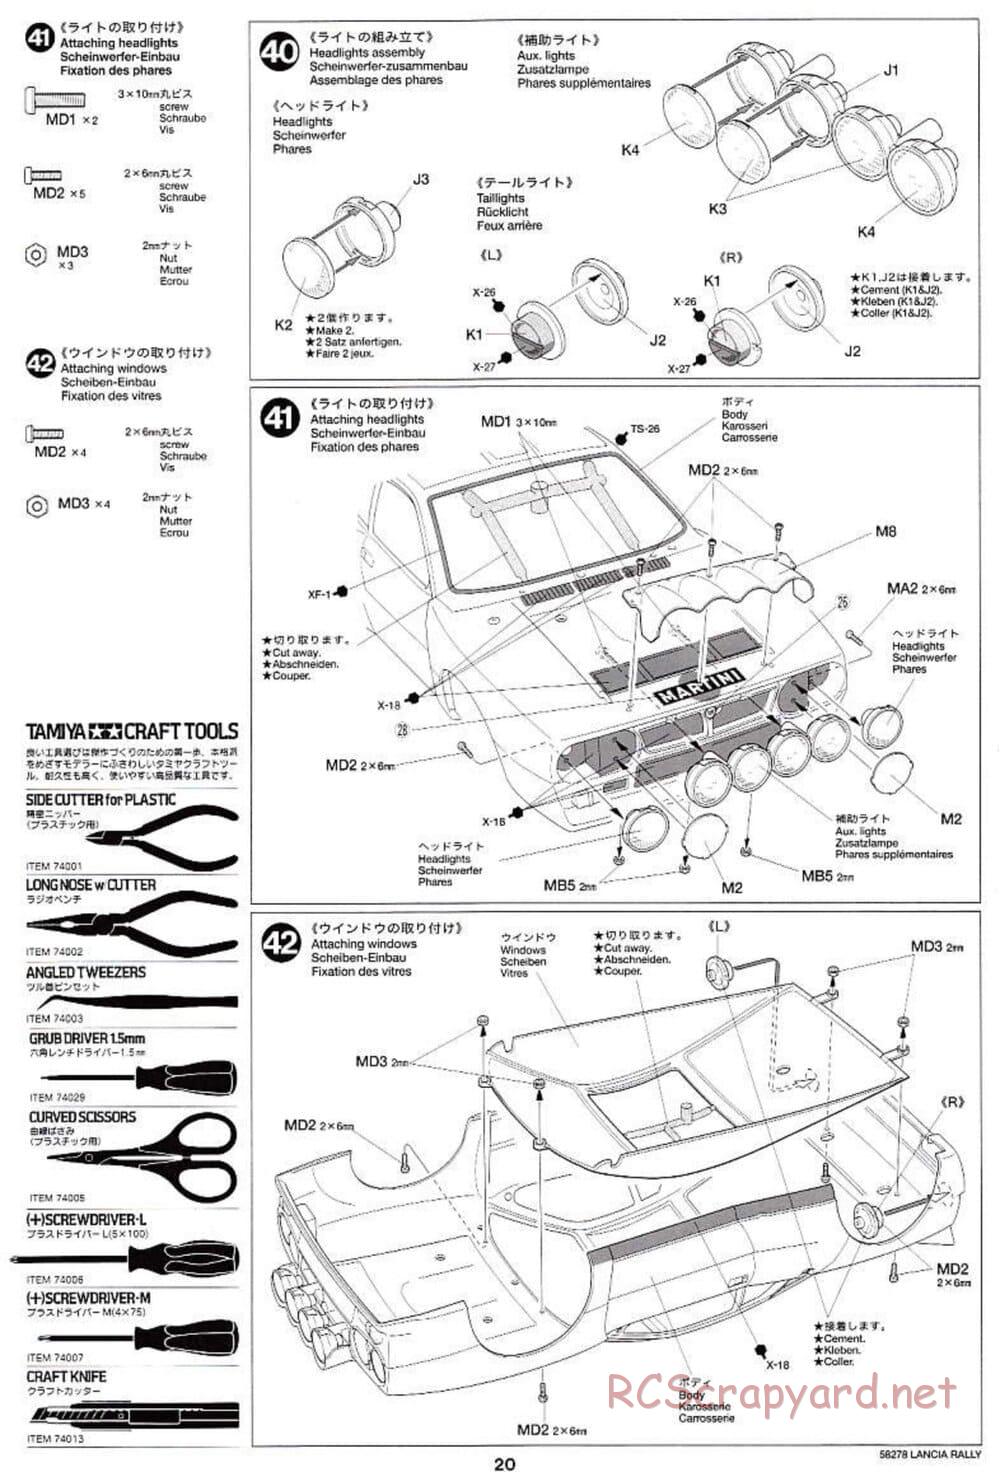 Tamiya - Lancia 037 Rally - TA-03RS Chassis - Manual - Page 20